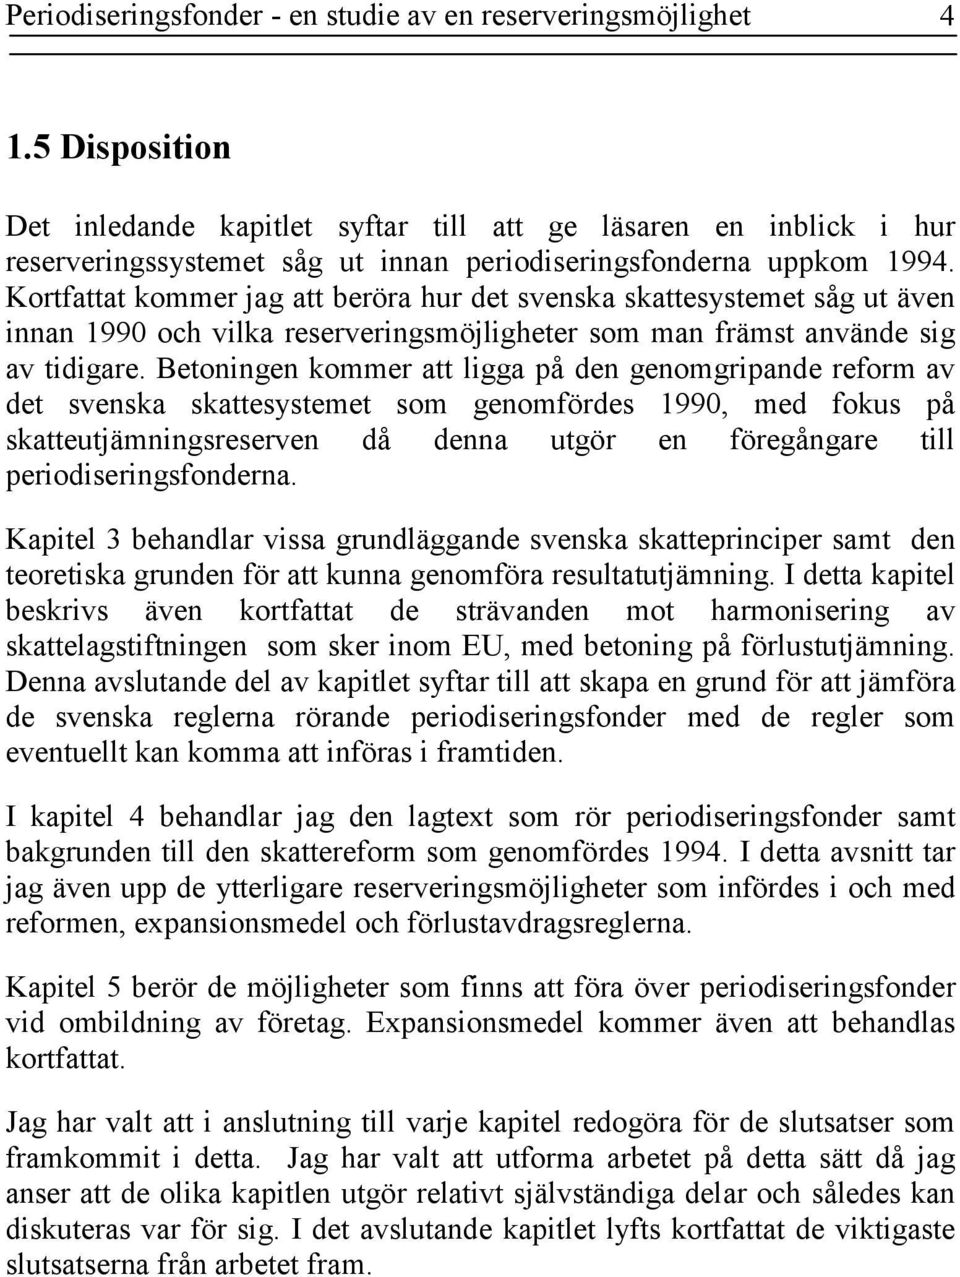 Kortfattat kommer jag att beröra hur det svenska skattesystemet såg ut även innan 1990 och vilka reserveringsmöjligheter som man främst använde sig av tidigare.